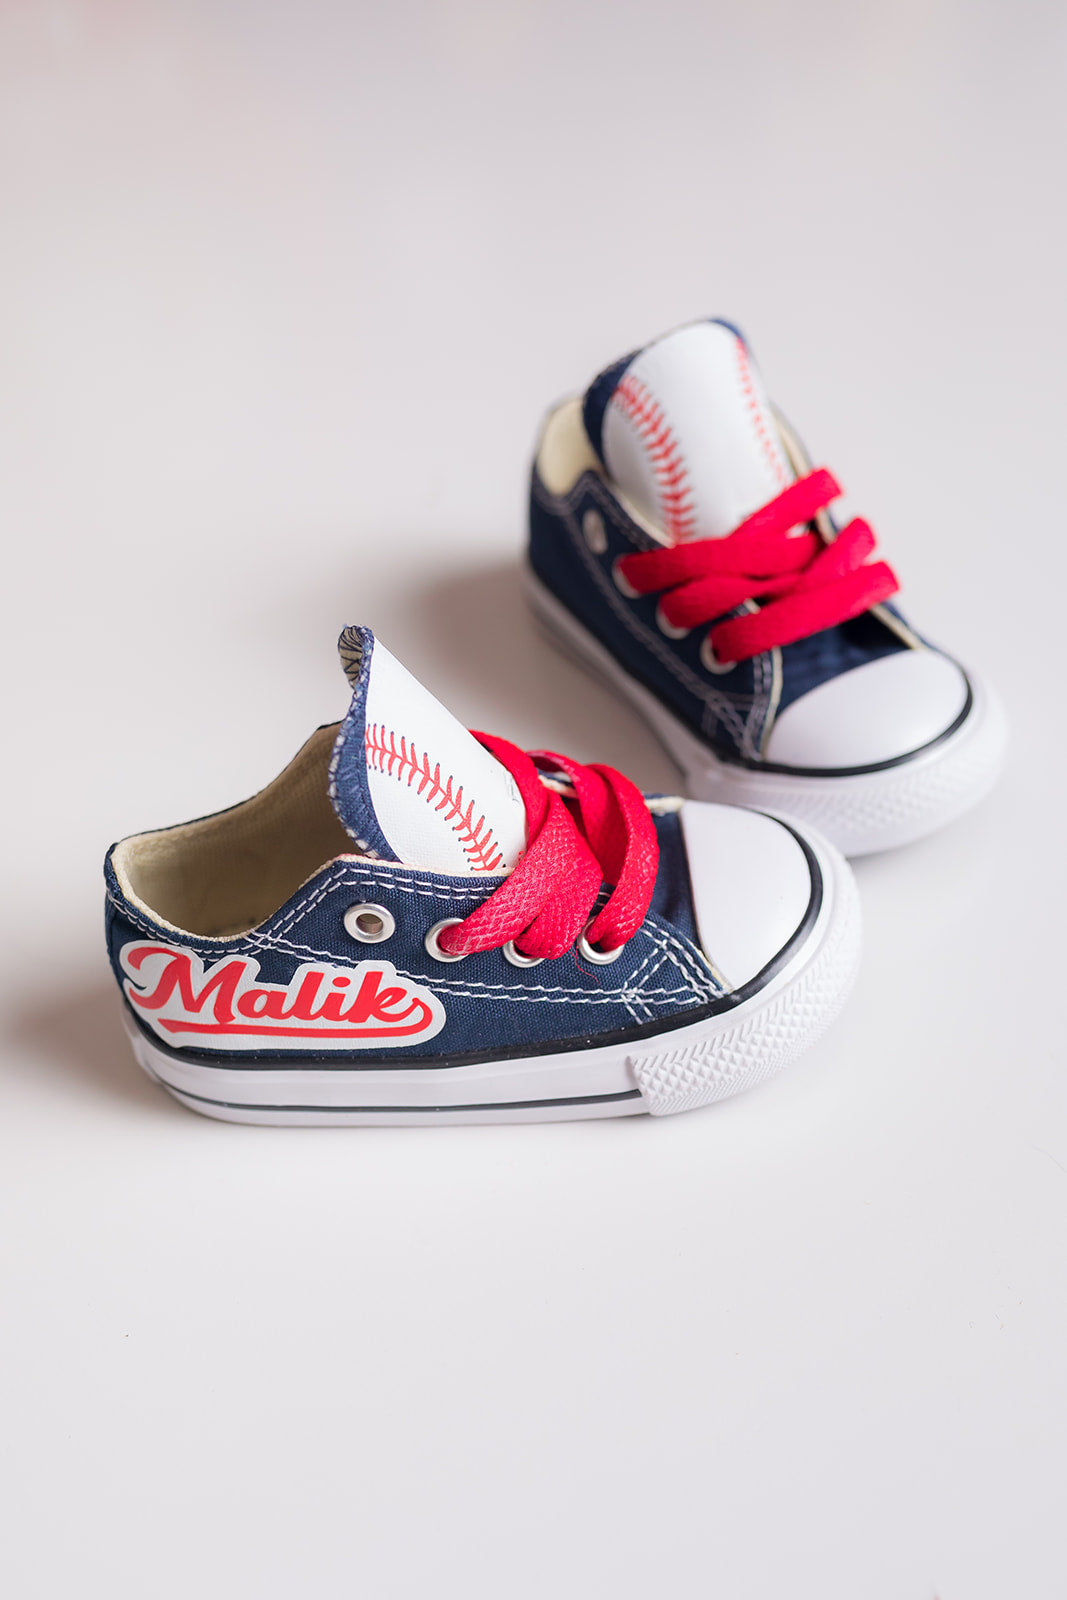 Baseball shoes-Baseball Converse-Boys Baseball Shoes